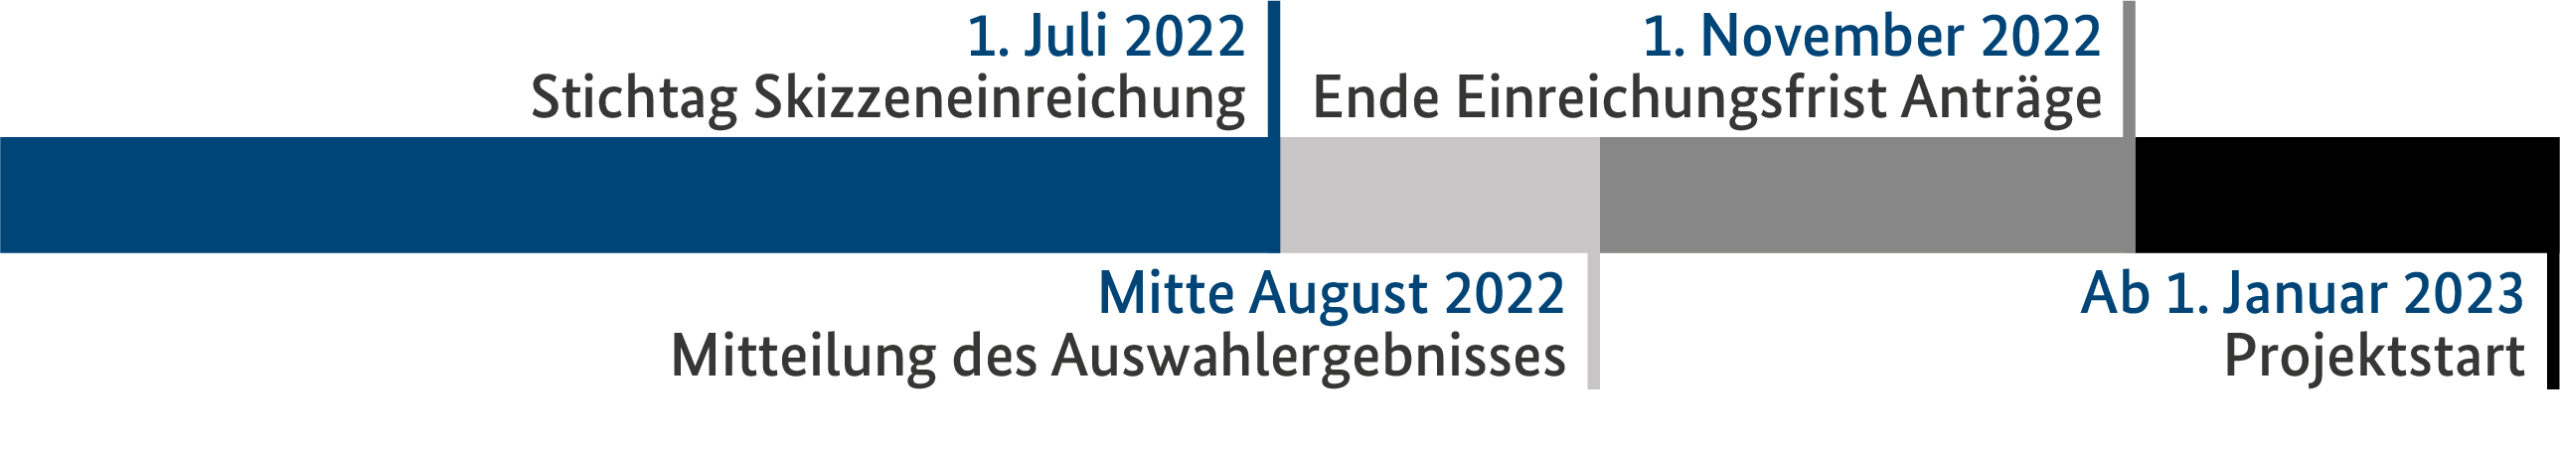 Zeitstrahl Bekanntmachung Innovative Arbeitswelten im Mittelstand, 1. Juli 2022